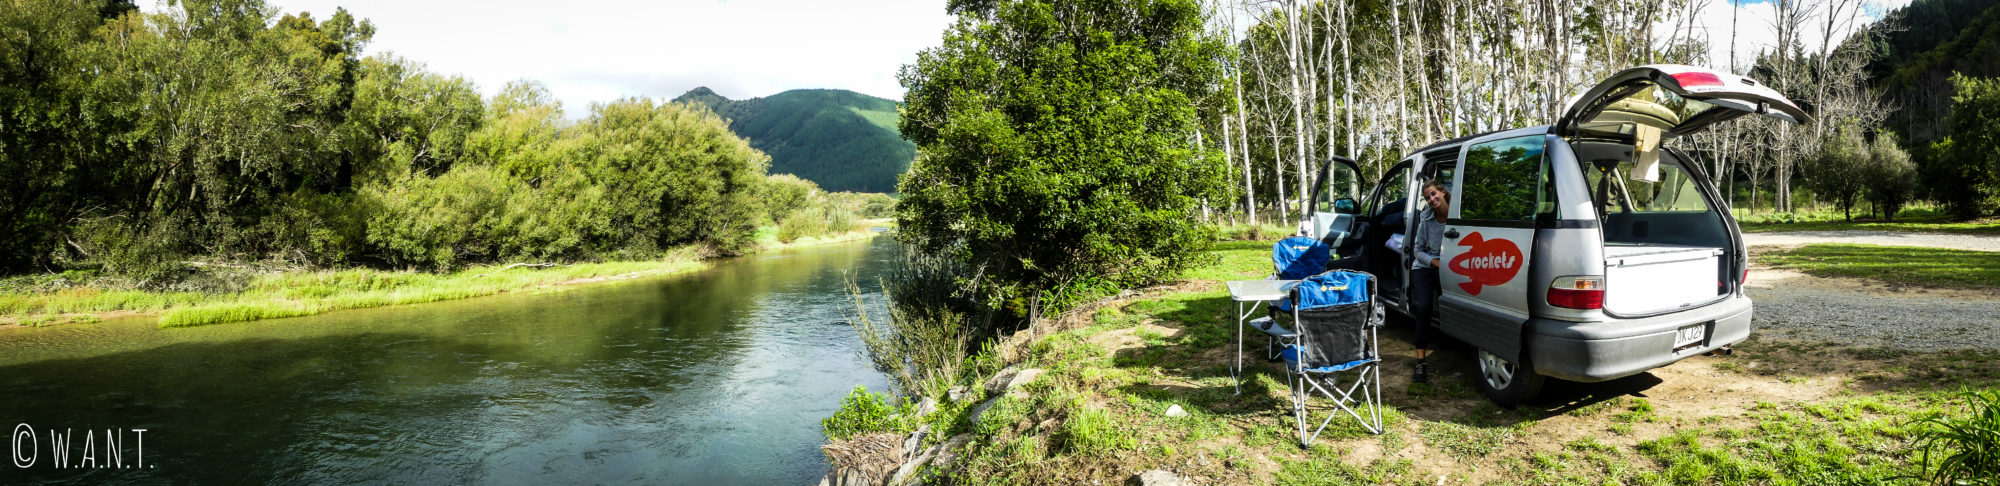 Camping Brown River Reserve à côté de la rivière pour une nouvelle nuit sur l'île du sud de la Nouvelle-Zélande